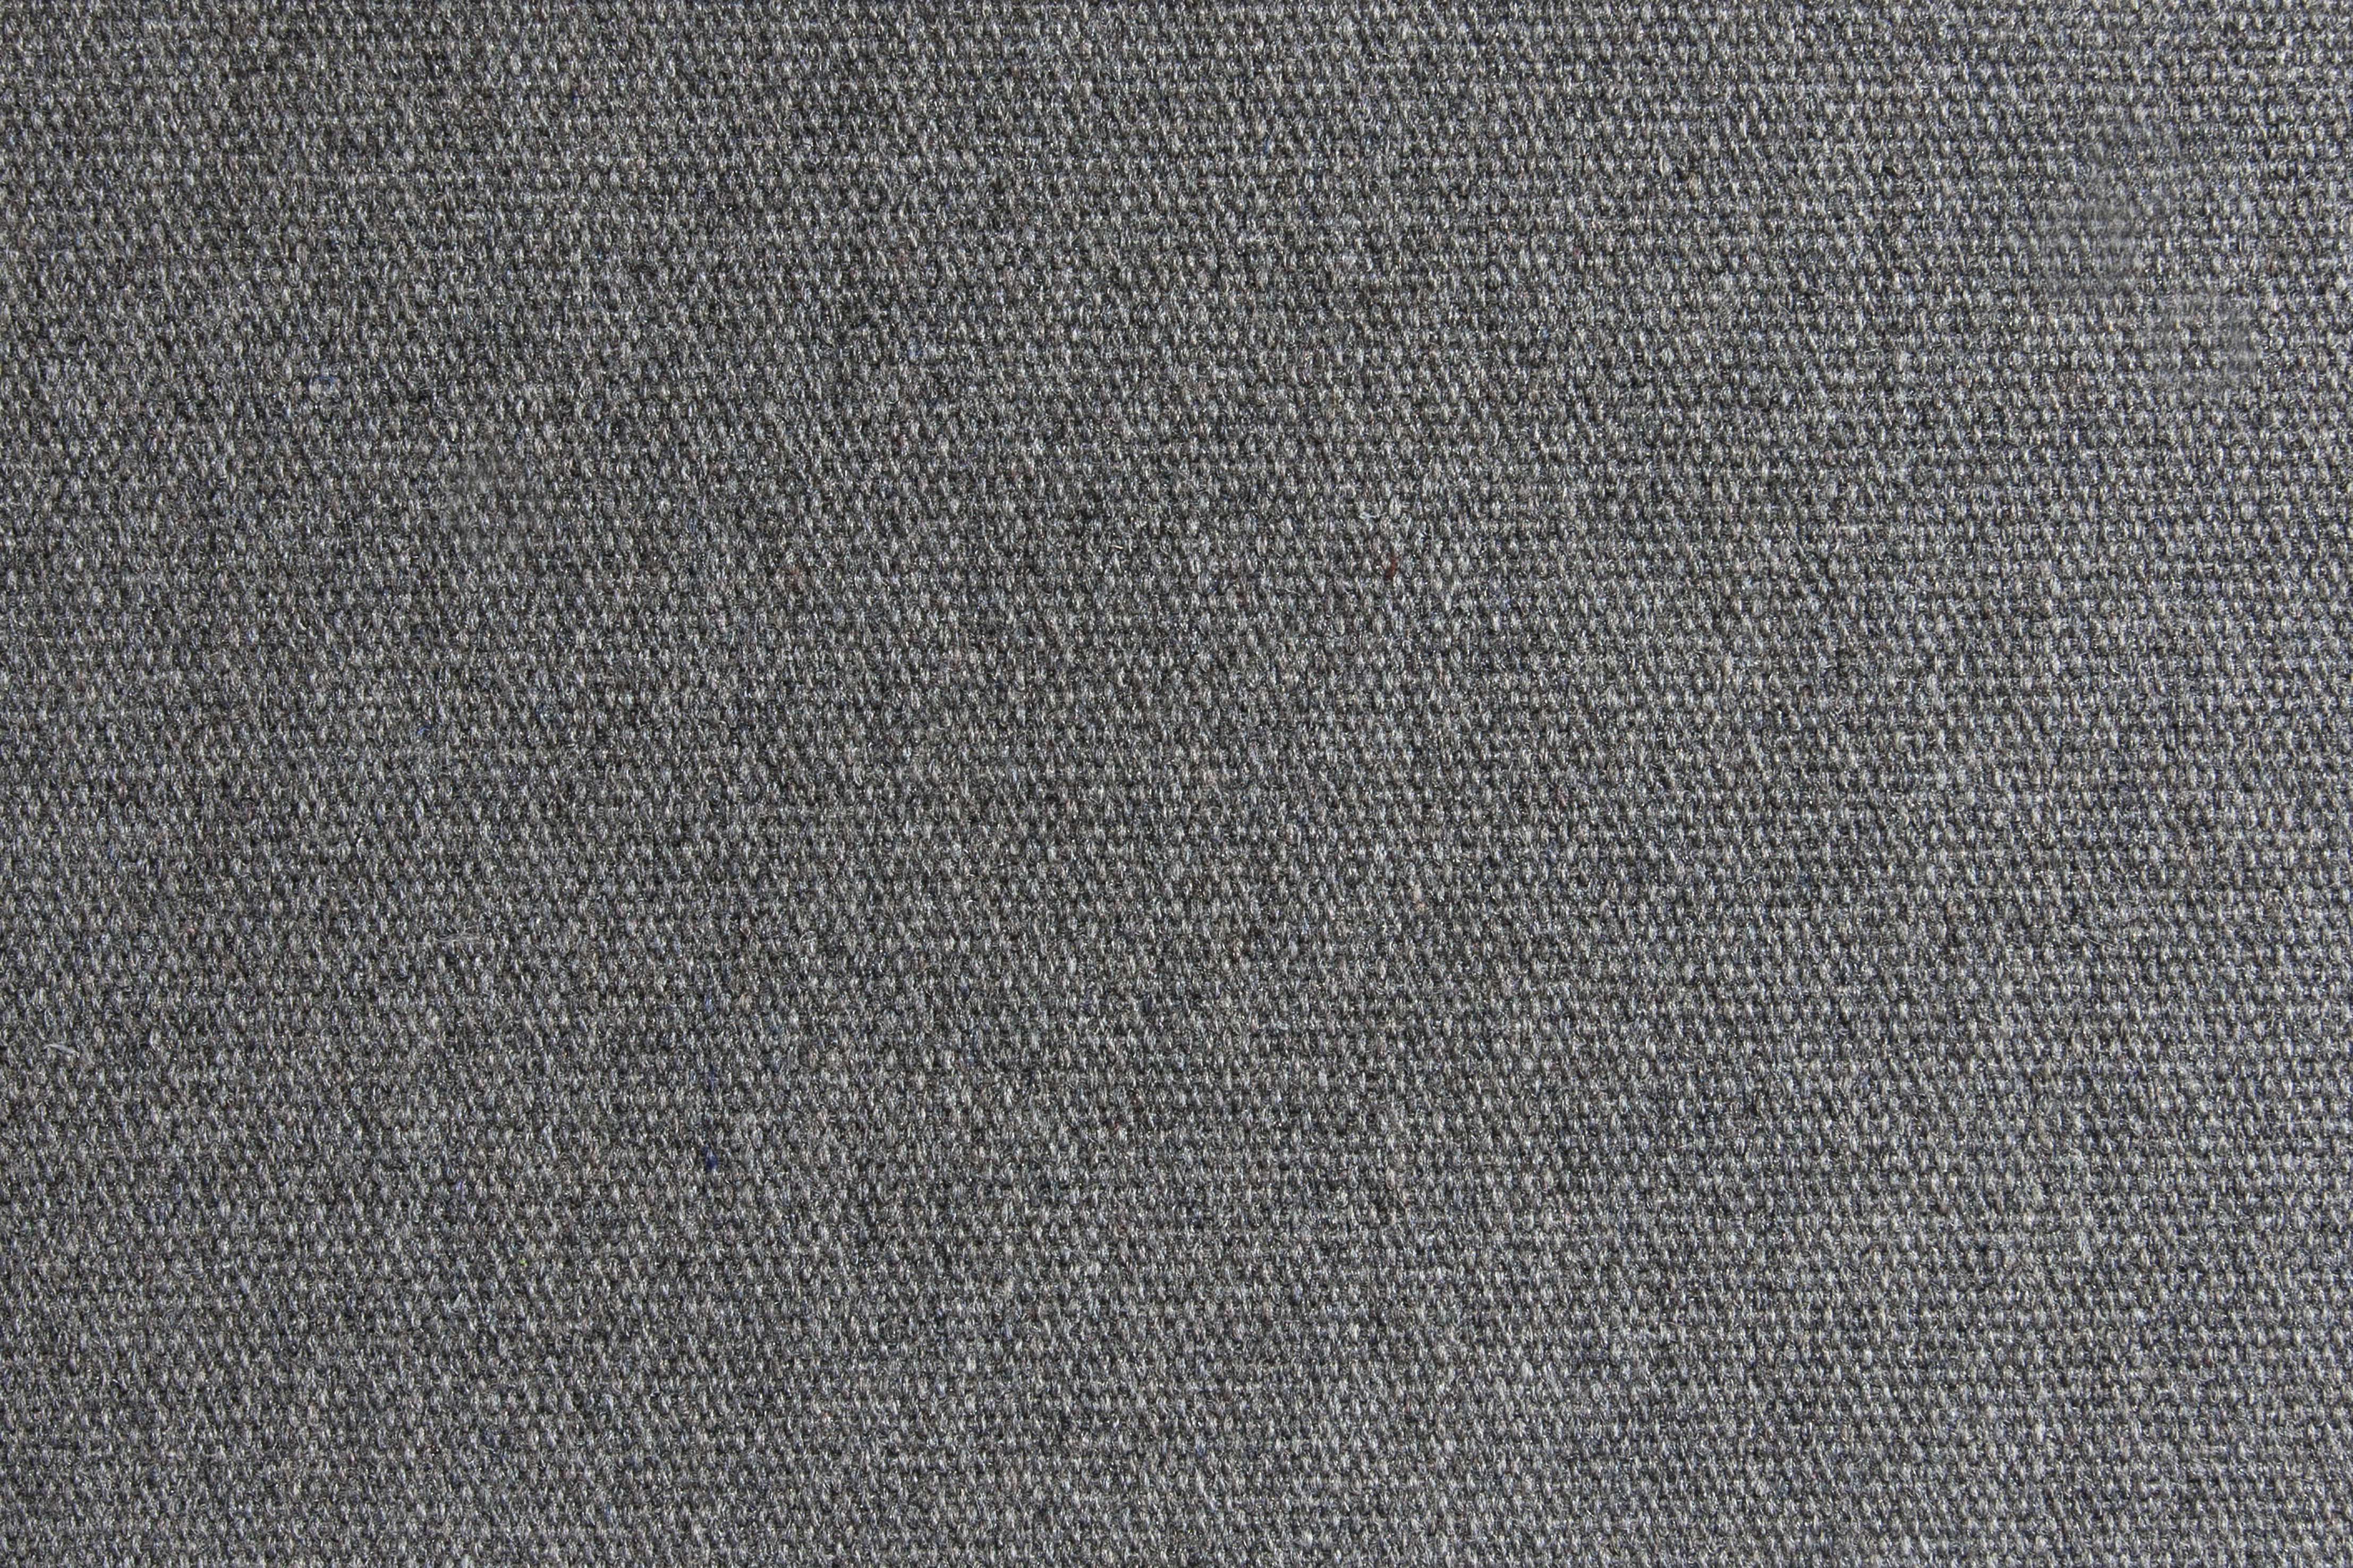 BRYCK Outdoor Sofa 2er Ecollection Medium grey